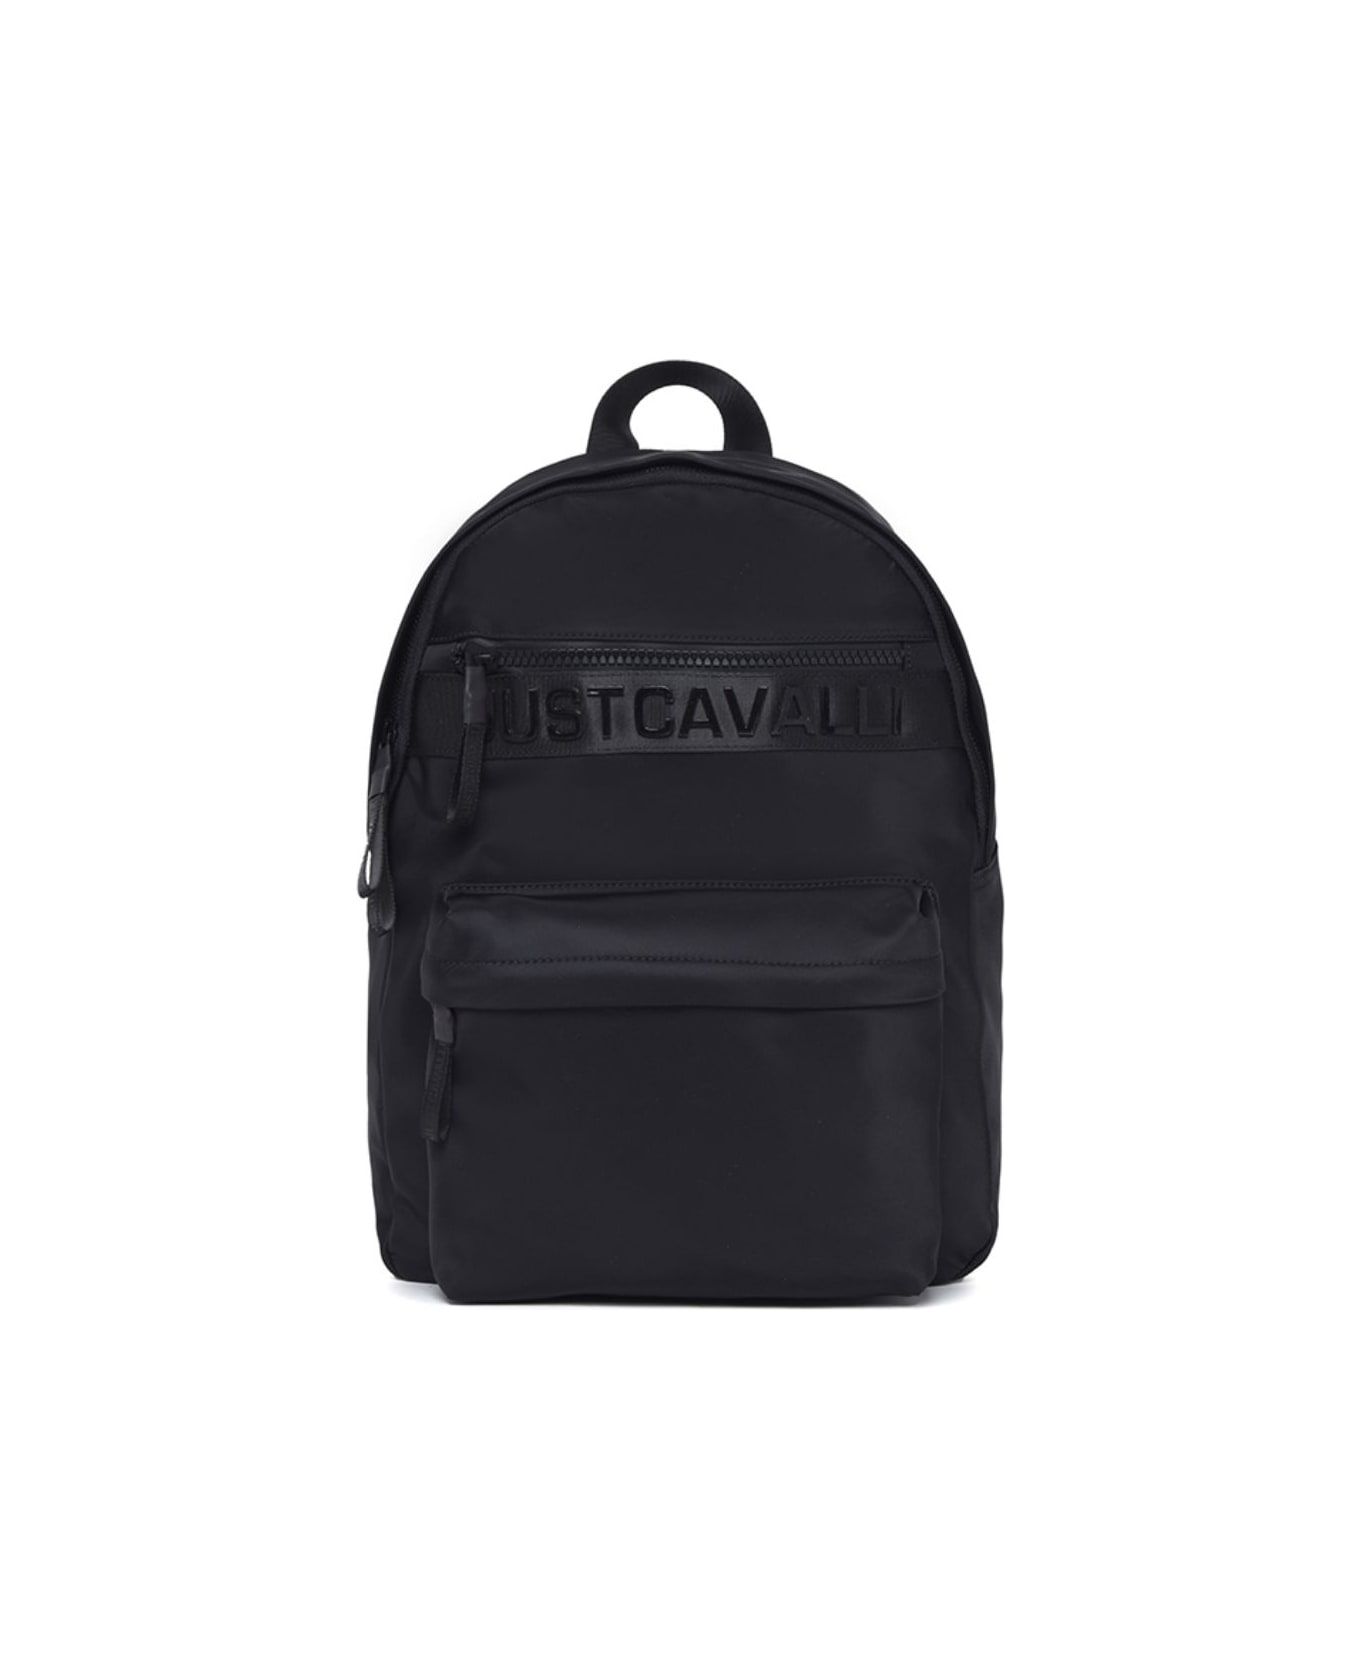 Just Cavalli Backpack - BLACK